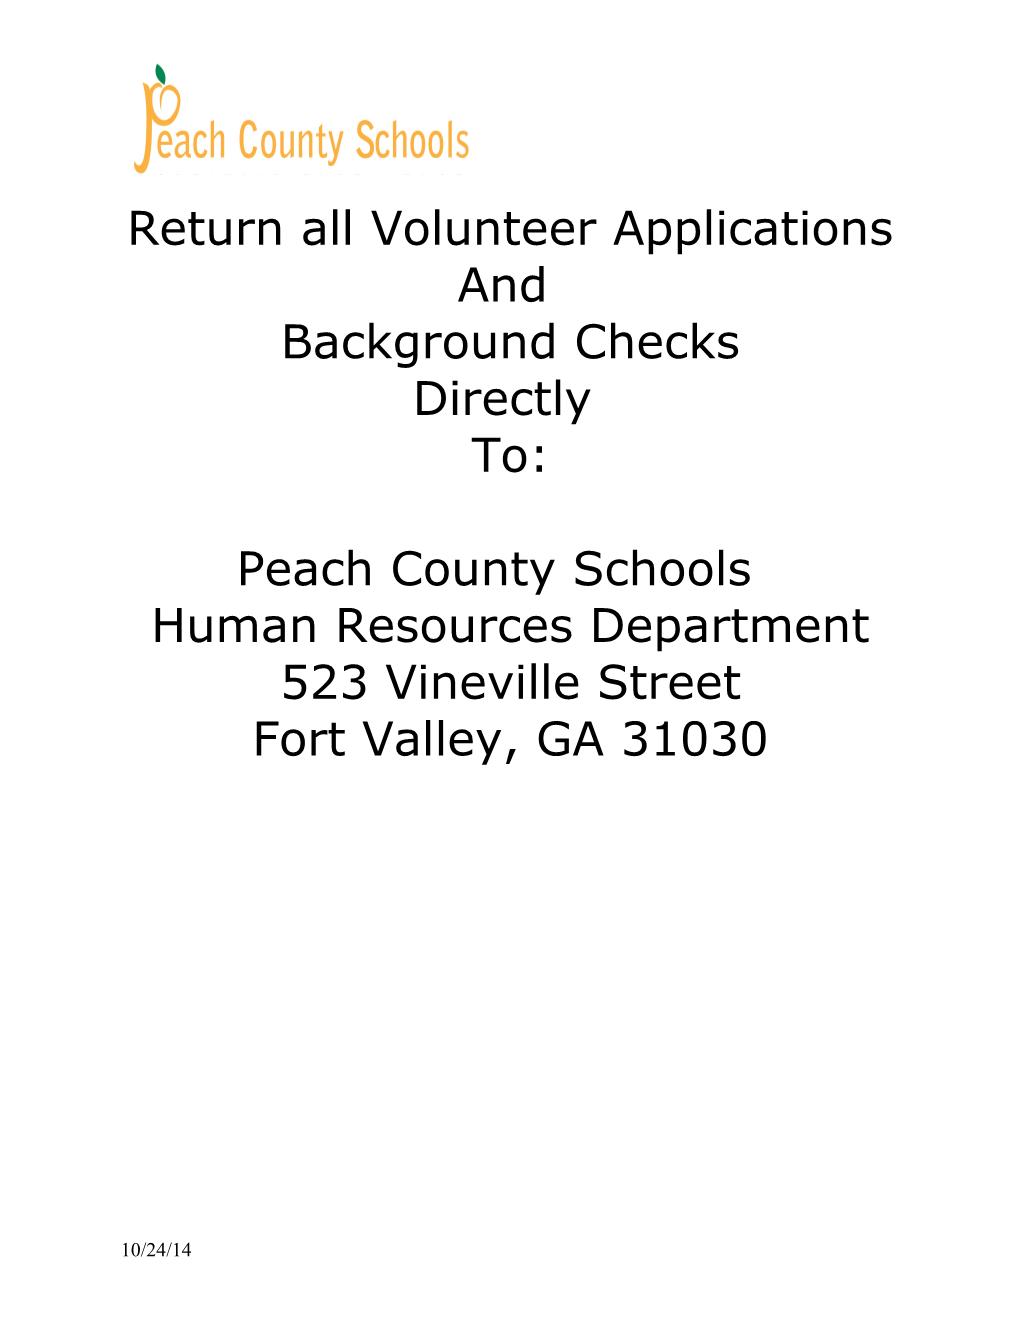 Return All Volunteer Applications